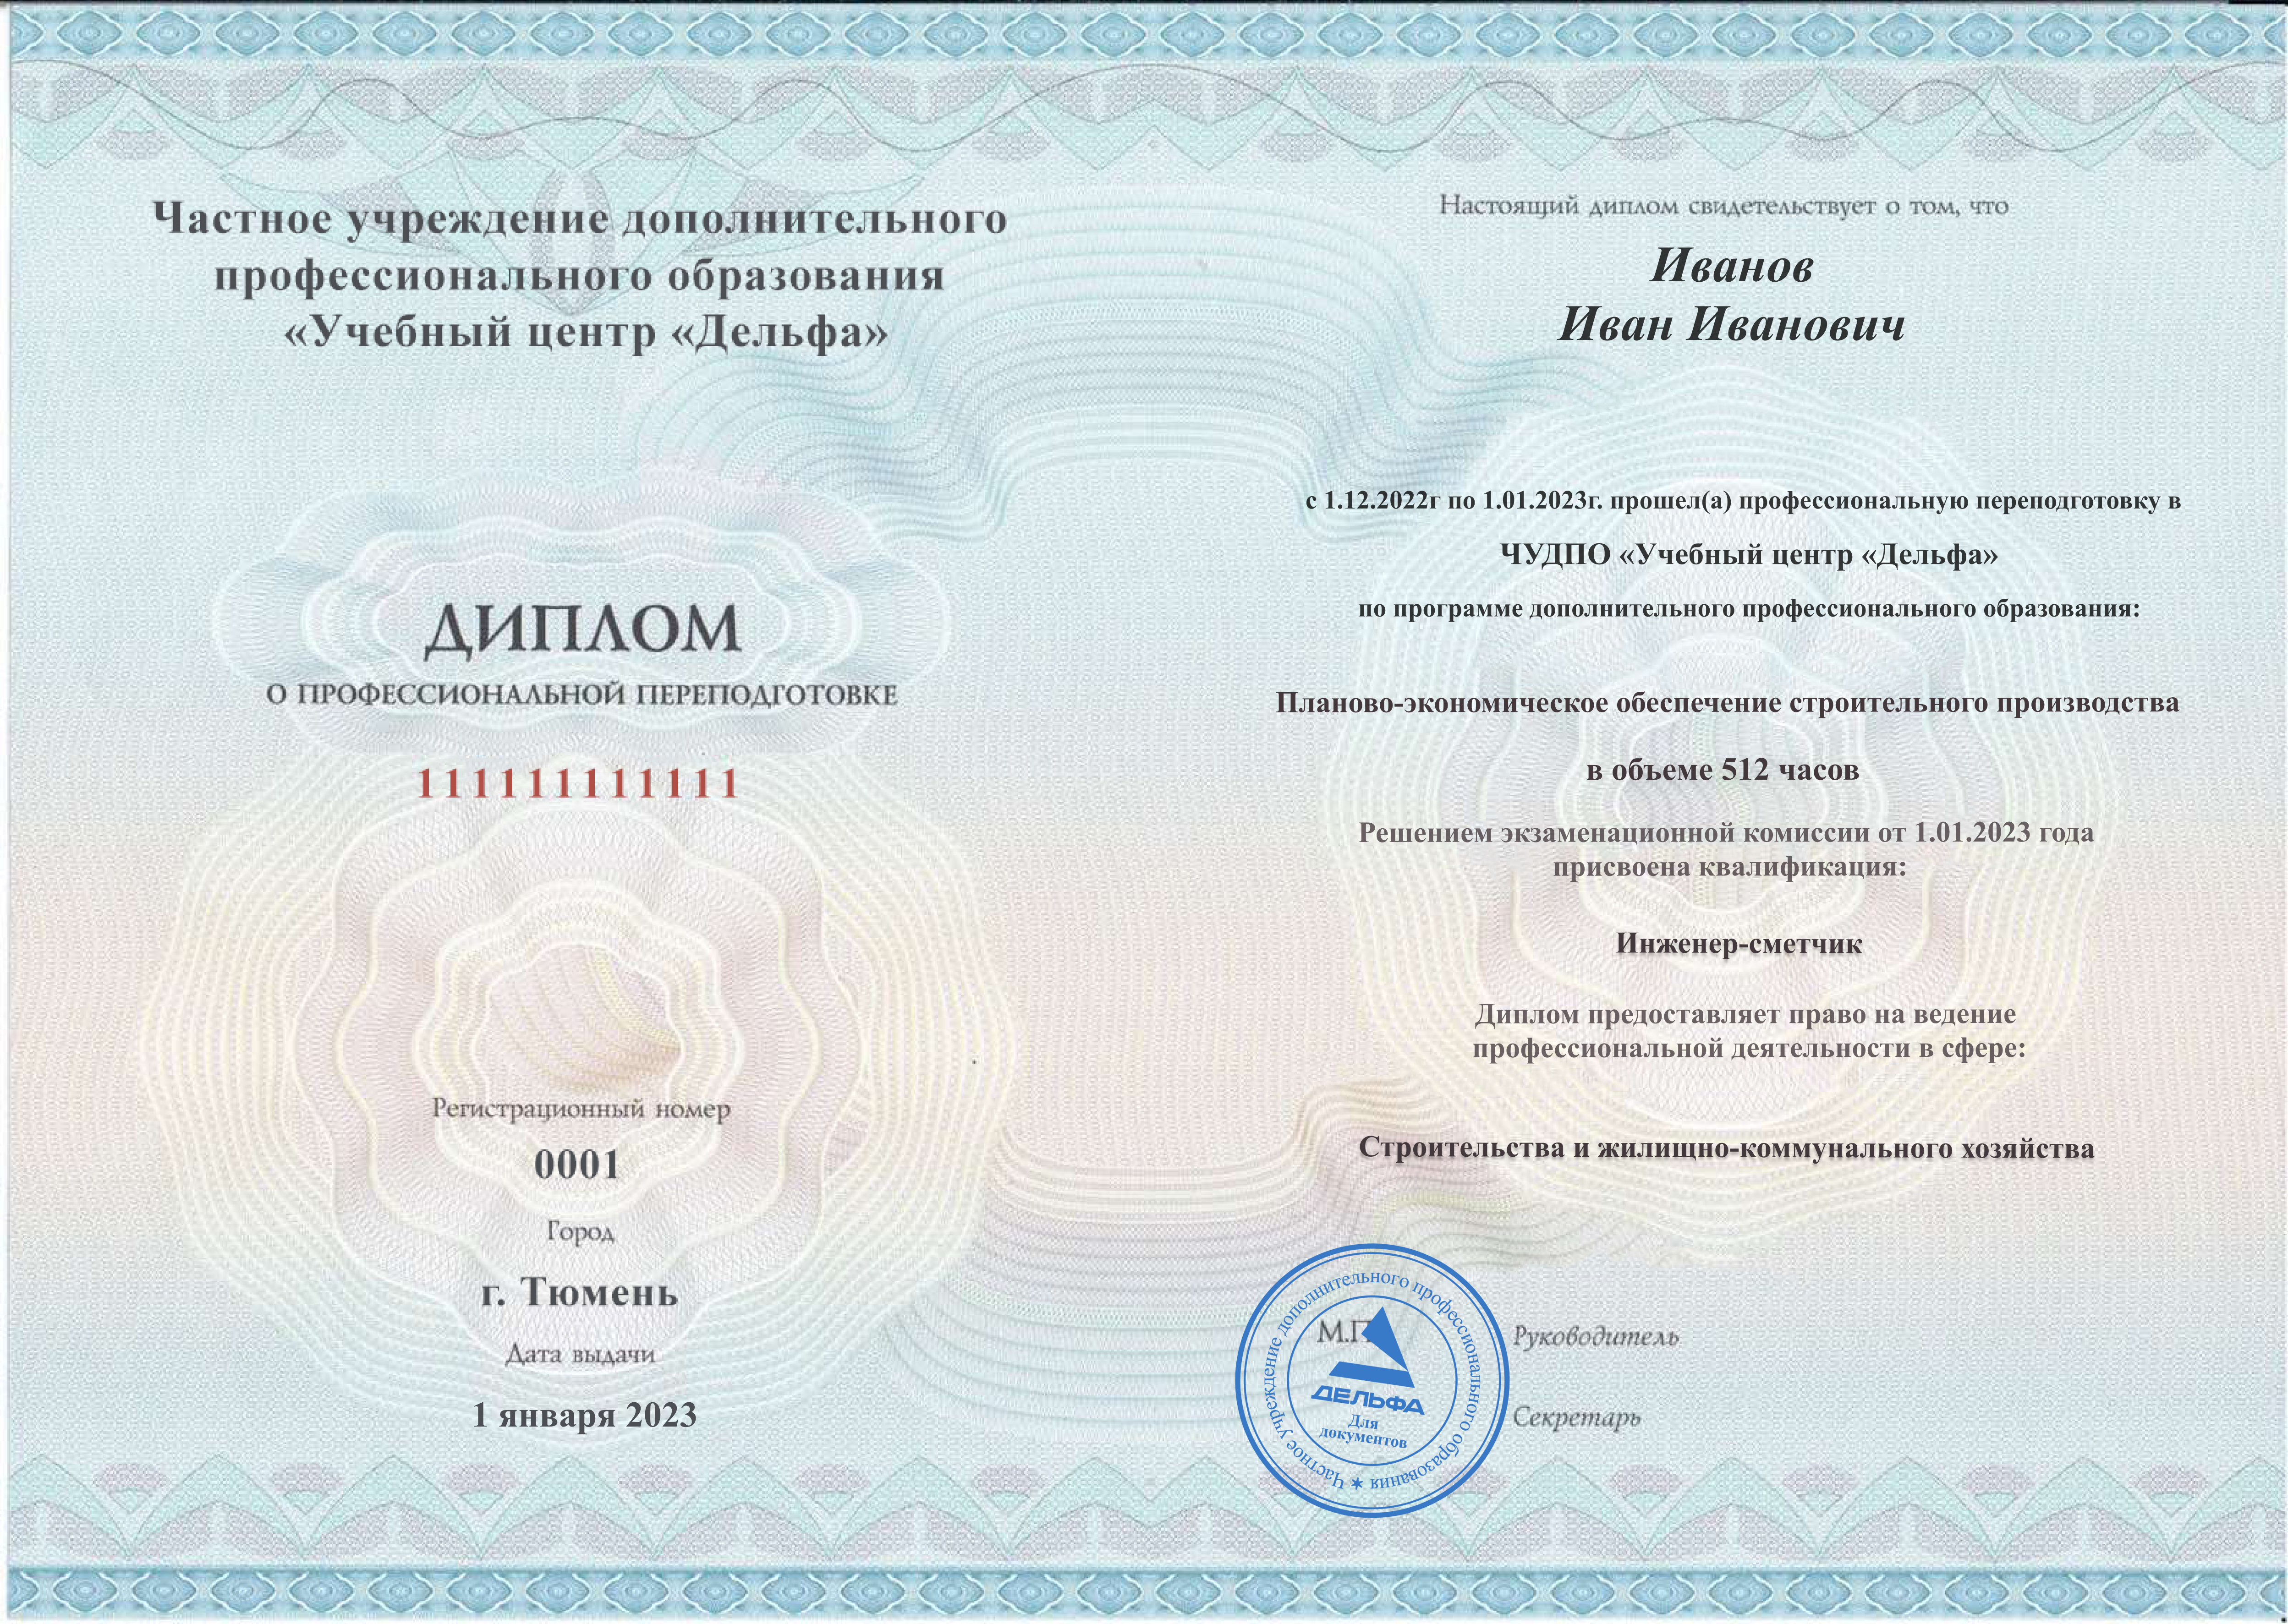 Диплом о профессиональной переподготовке с присвоением квалификации «Инженер-сметчик»